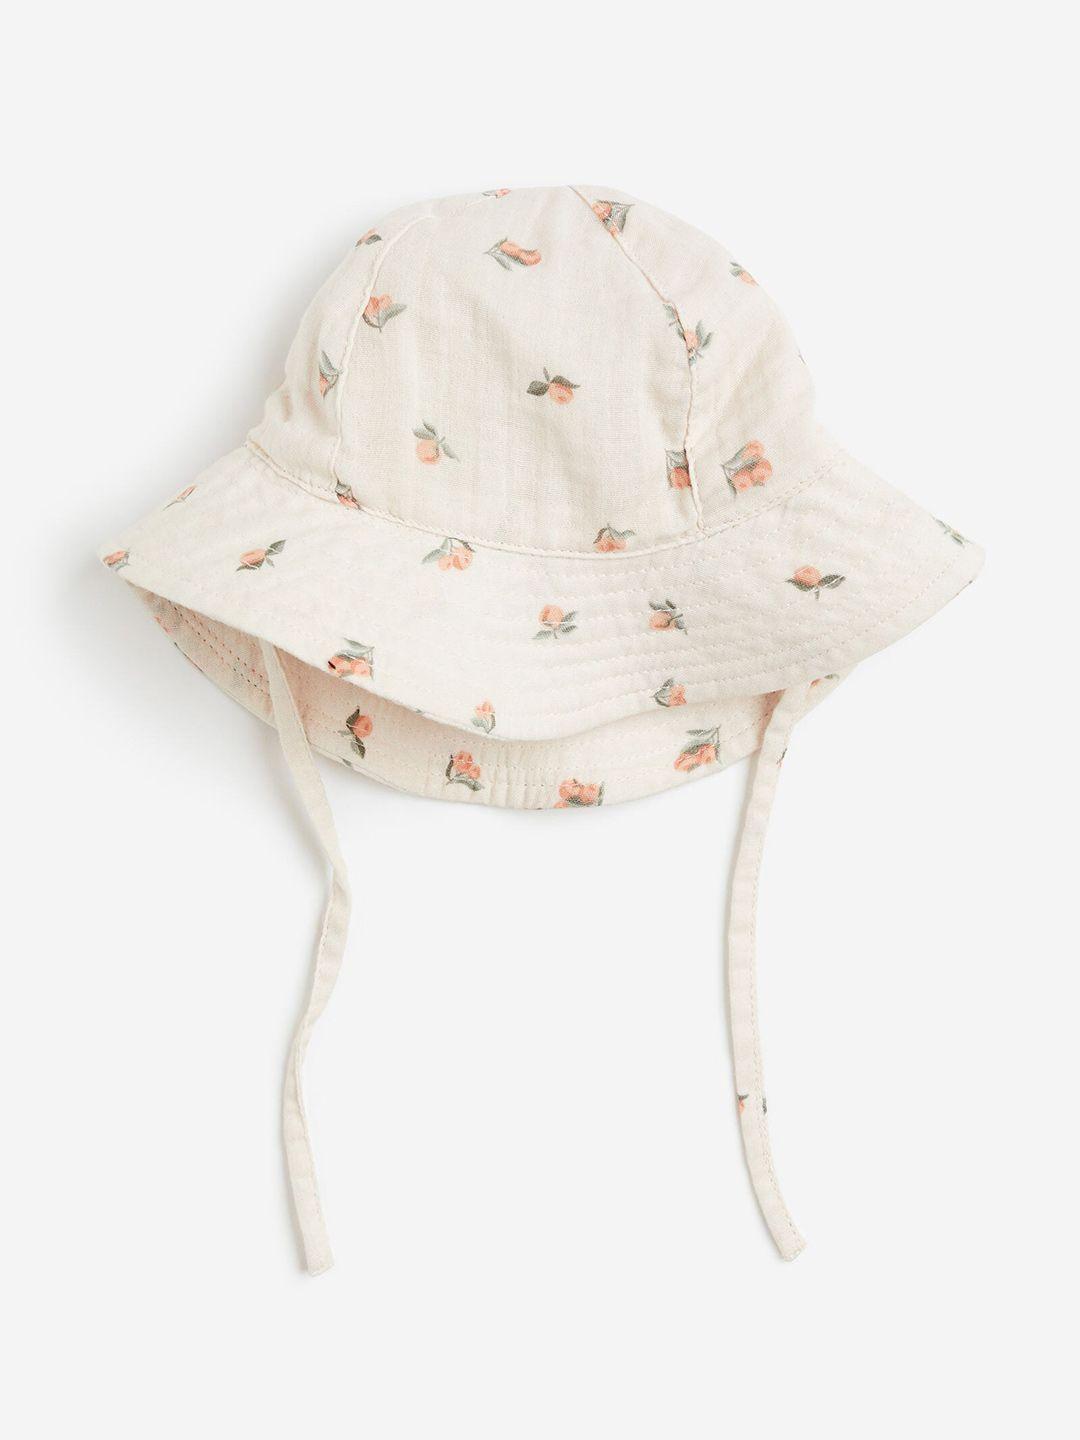 h&m-infant-boys-pure-cotton-sun-hat